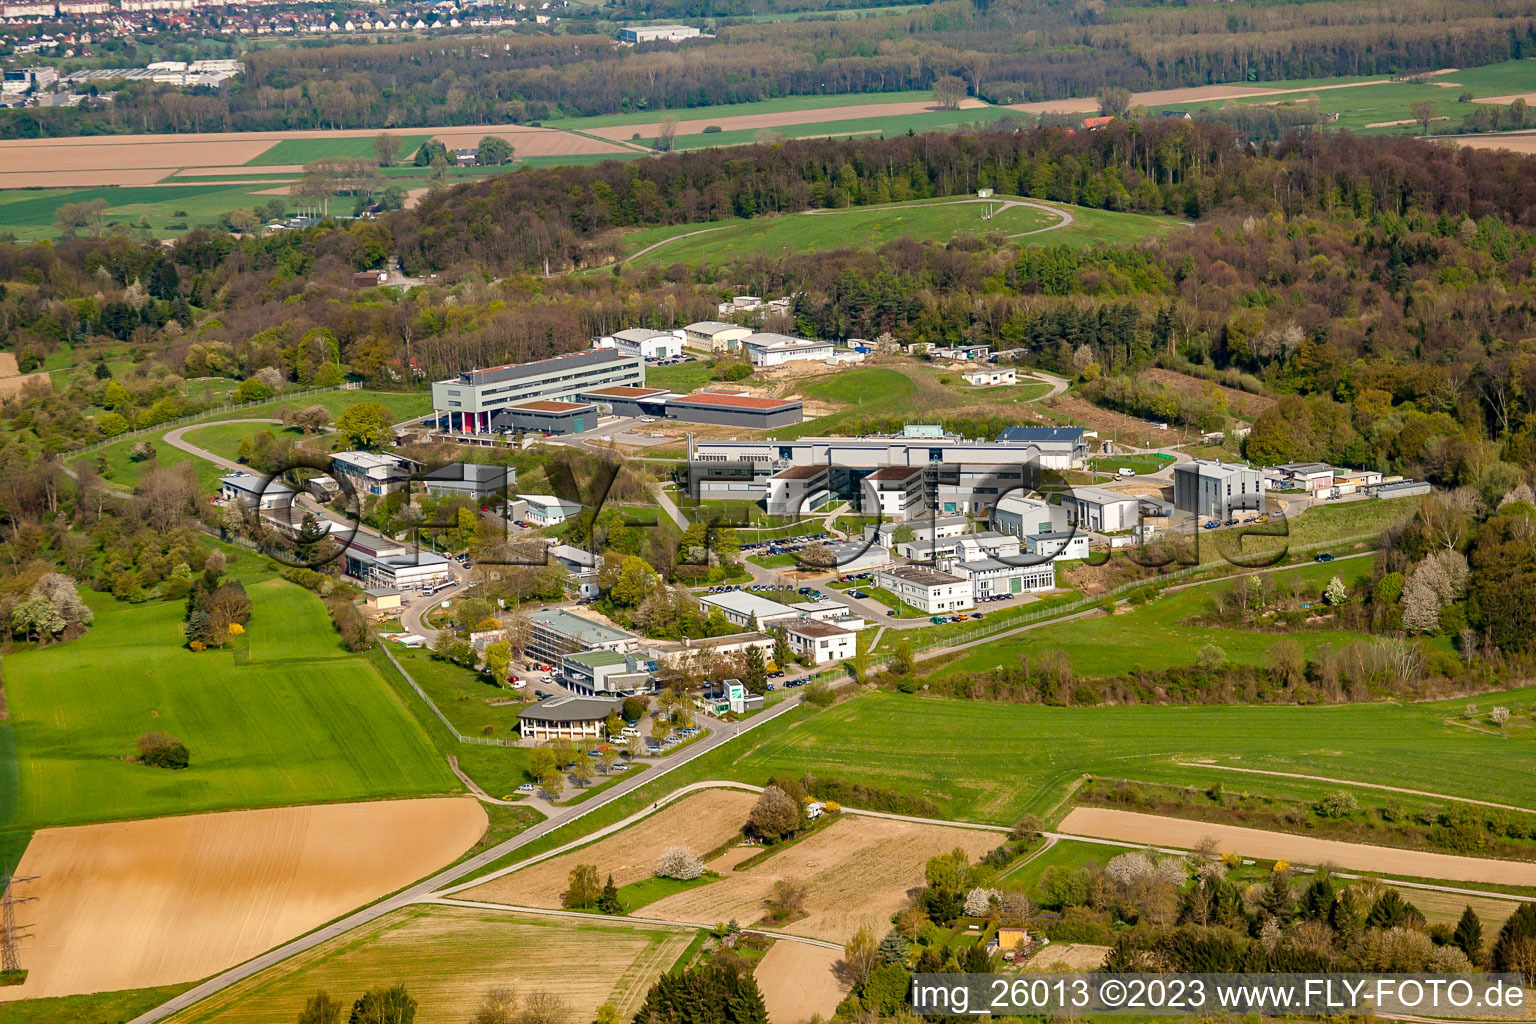 Vue aérienne de Institut Fraunhofer de technologie chimique (TIC) à le quartier Berghausen in Pfinztal dans le département Bade-Wurtemberg, Allemagne